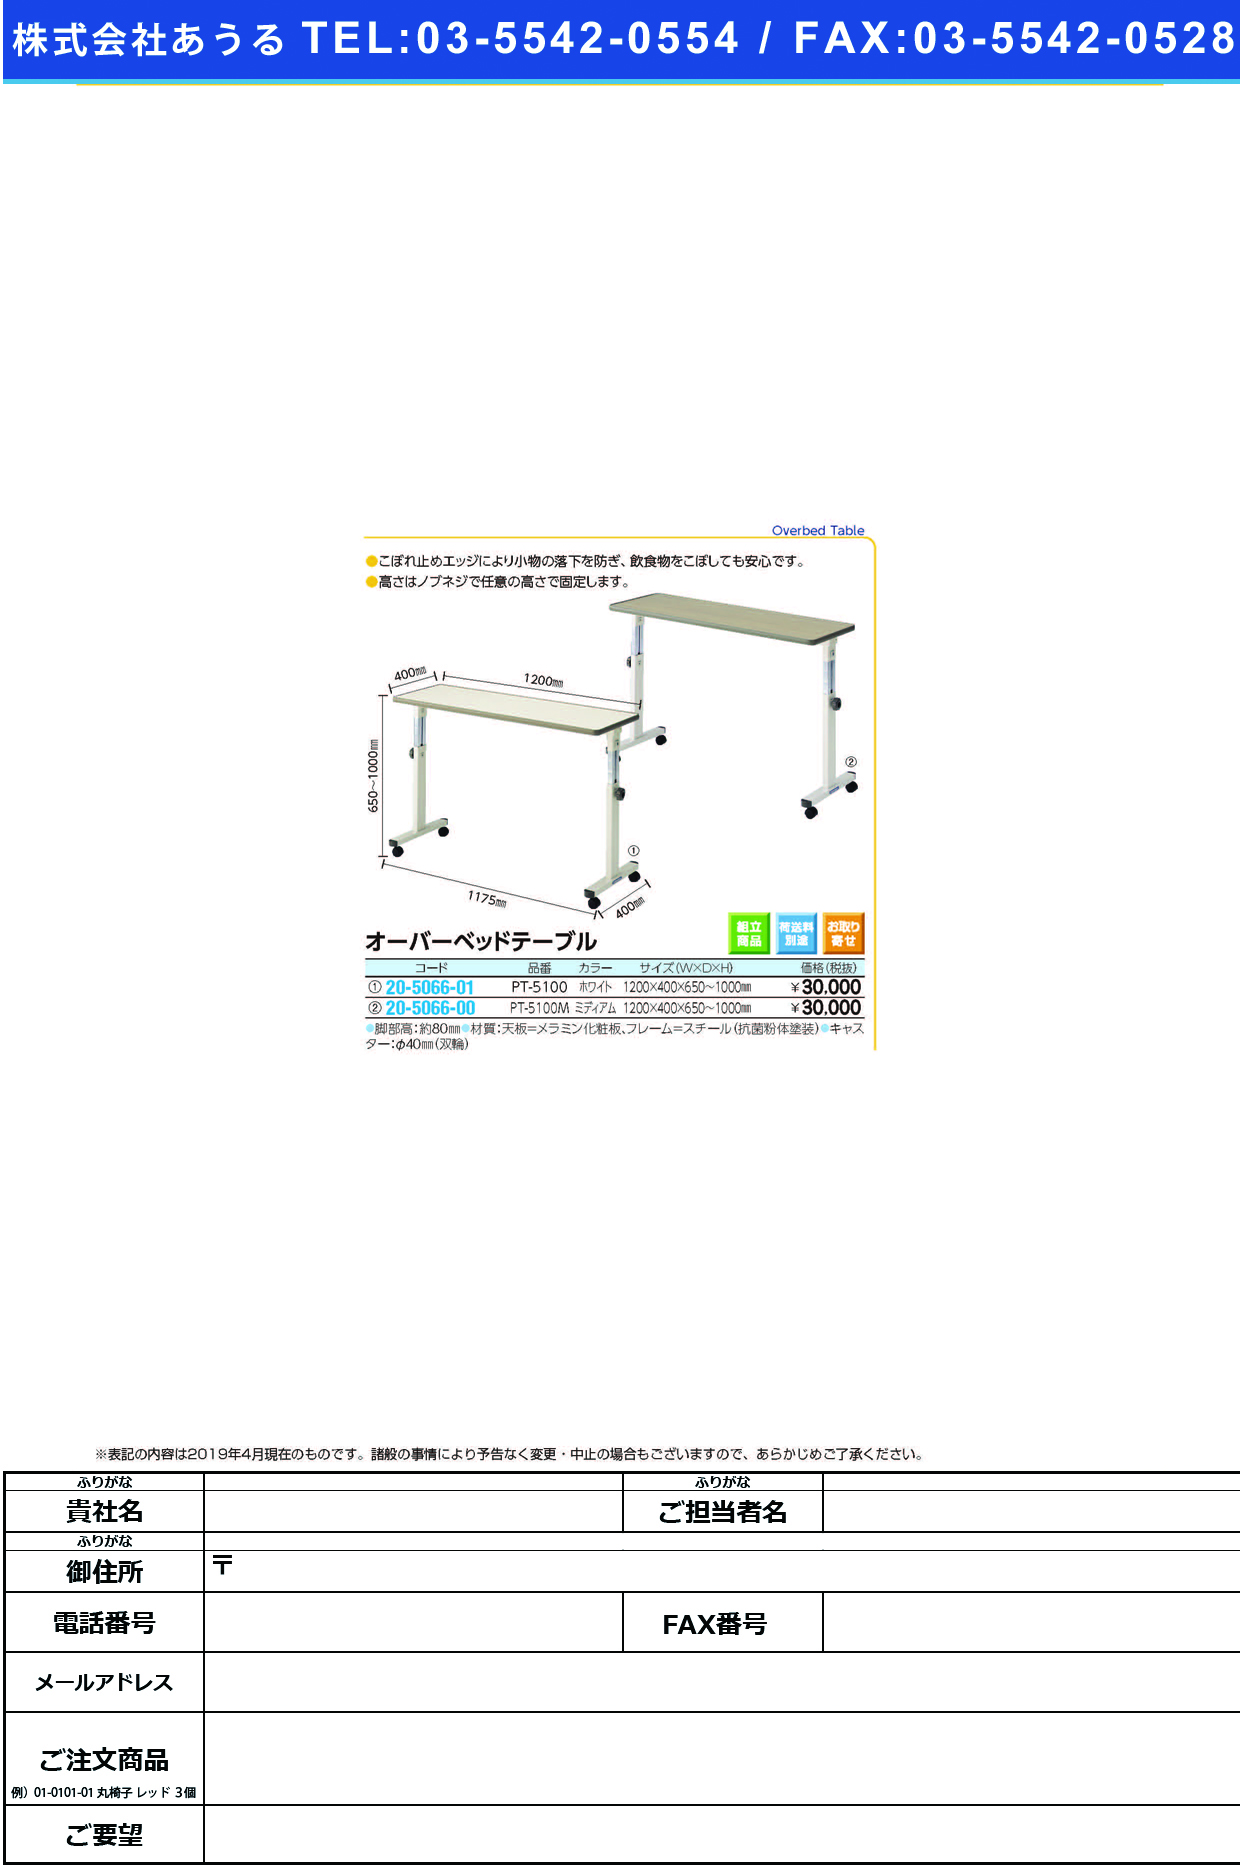 (20-5066-00)オーバーベッドテーブル PT-5100M(ﾐﾃﾞｨｱﾑ) ｵｰﾊﾞｰﾍﾞｯﾄﾞﾃｰﾌﾞﾙ(シーホネンス)【1台単位】【2019年カタログ商品】